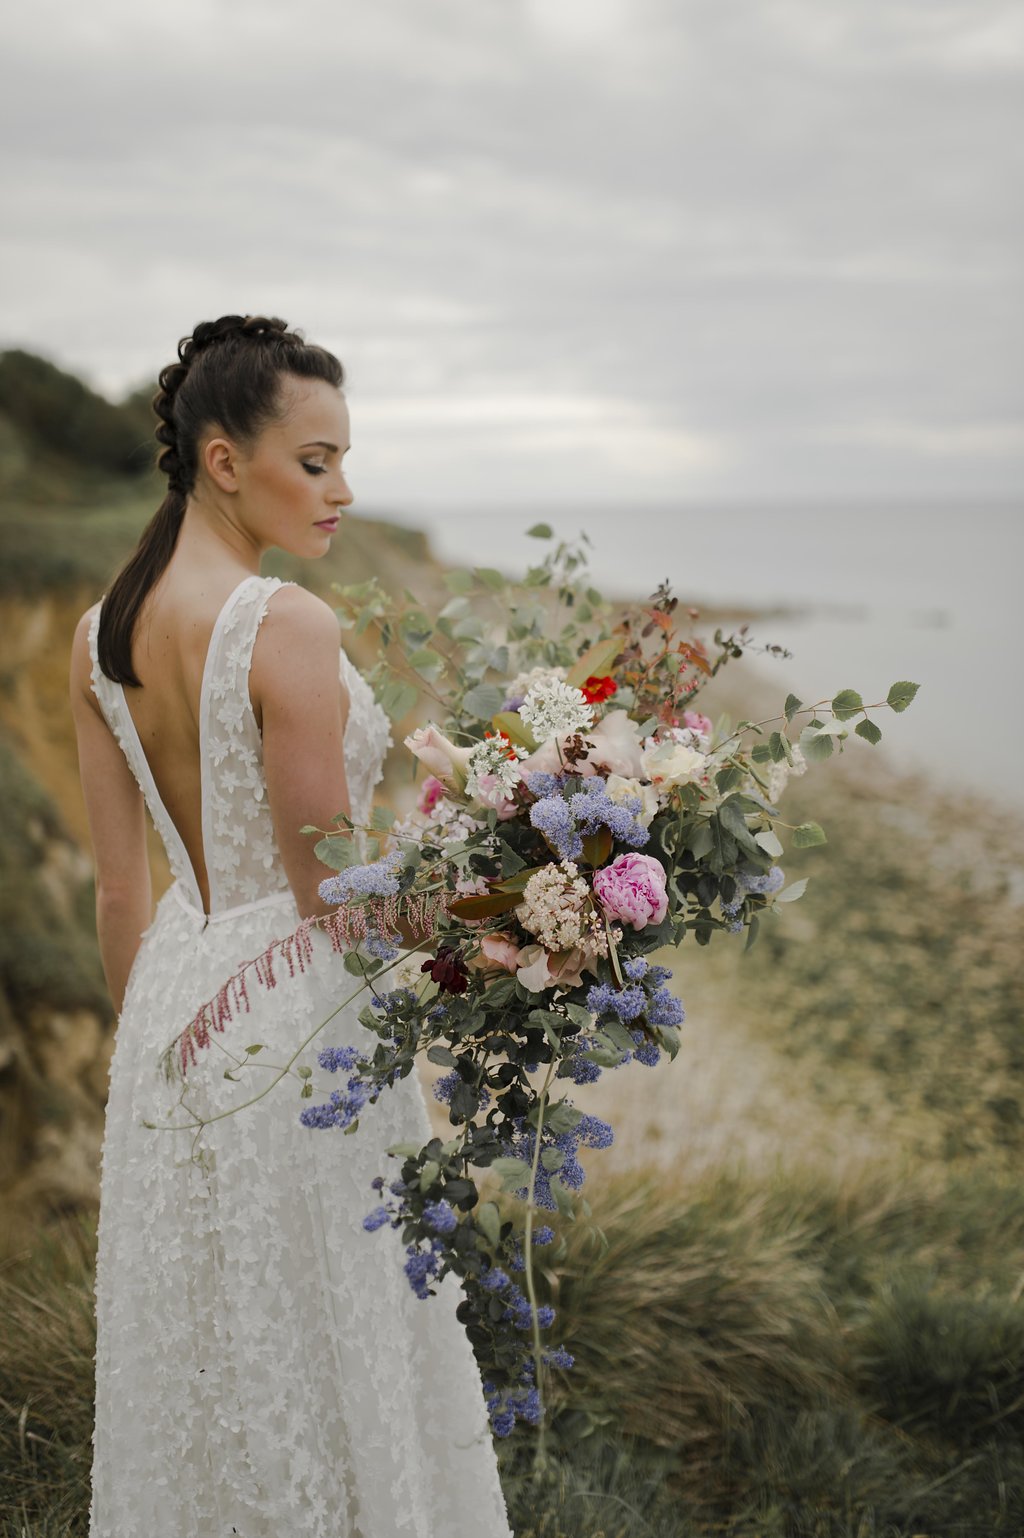 Regards d'horizon - le wedding magazine © Solveig et Ronan Photographes